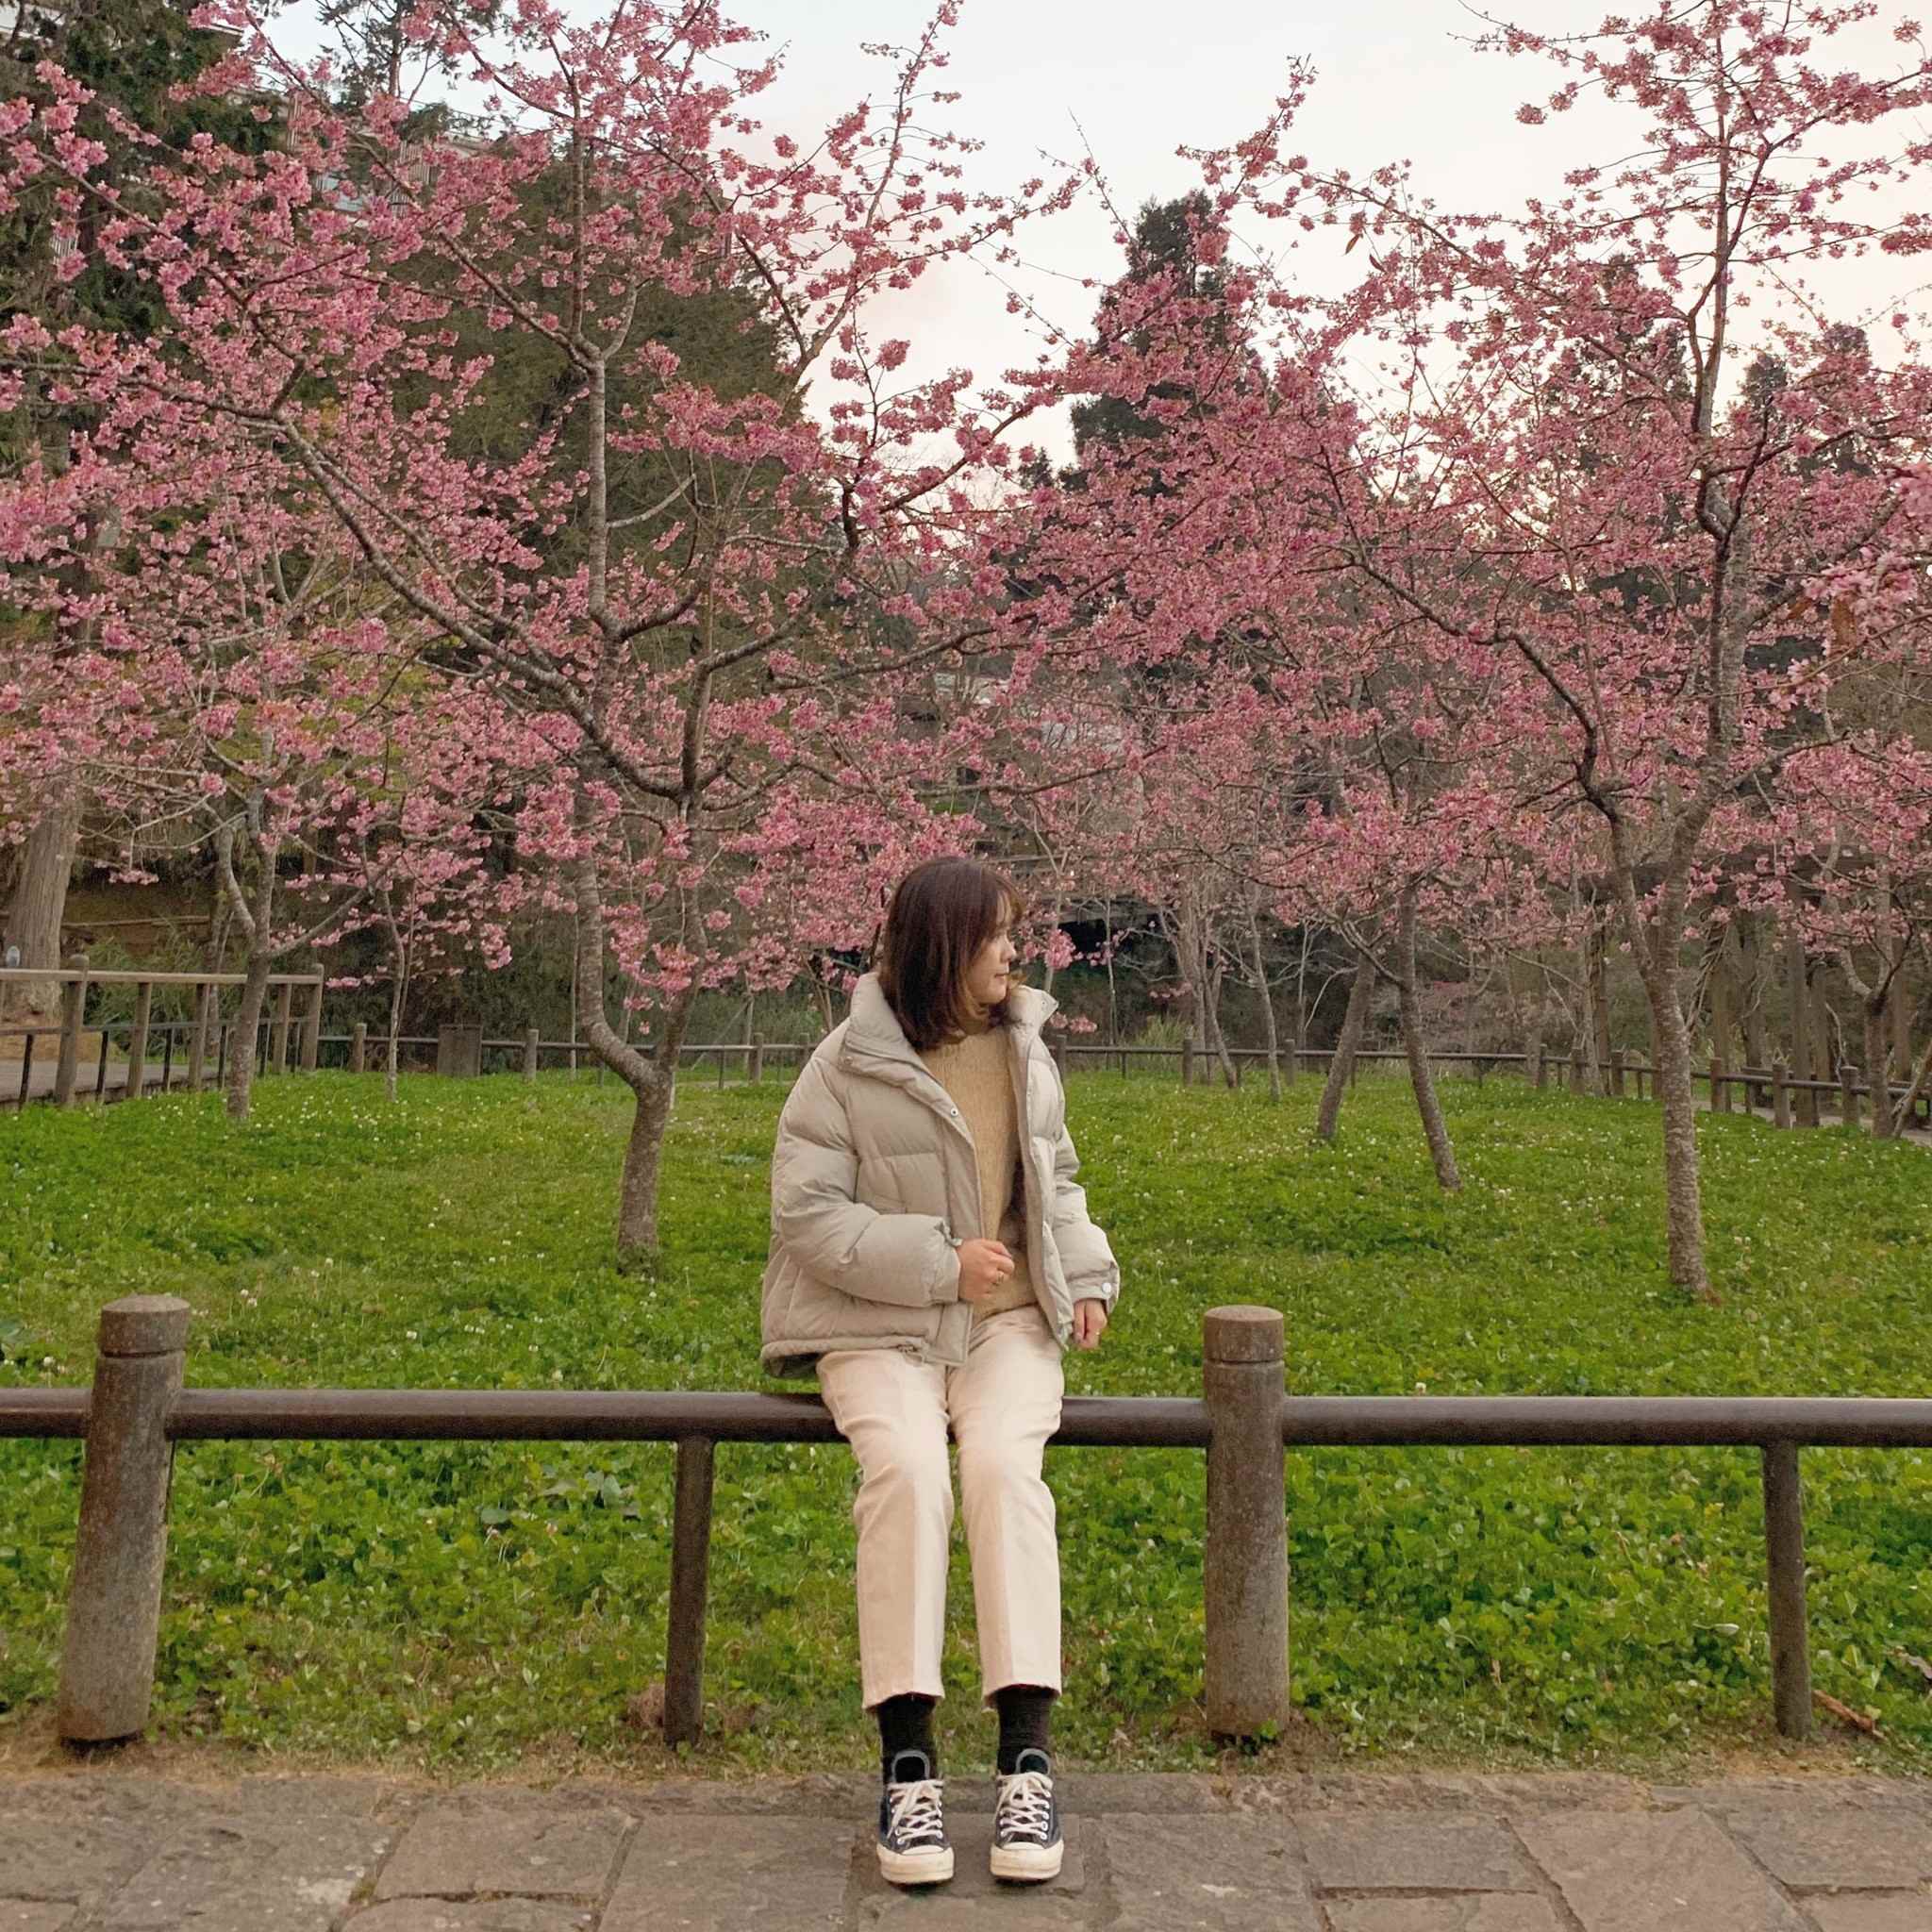 阿里山櫻花季 沼平車站周邊櫻花盛開